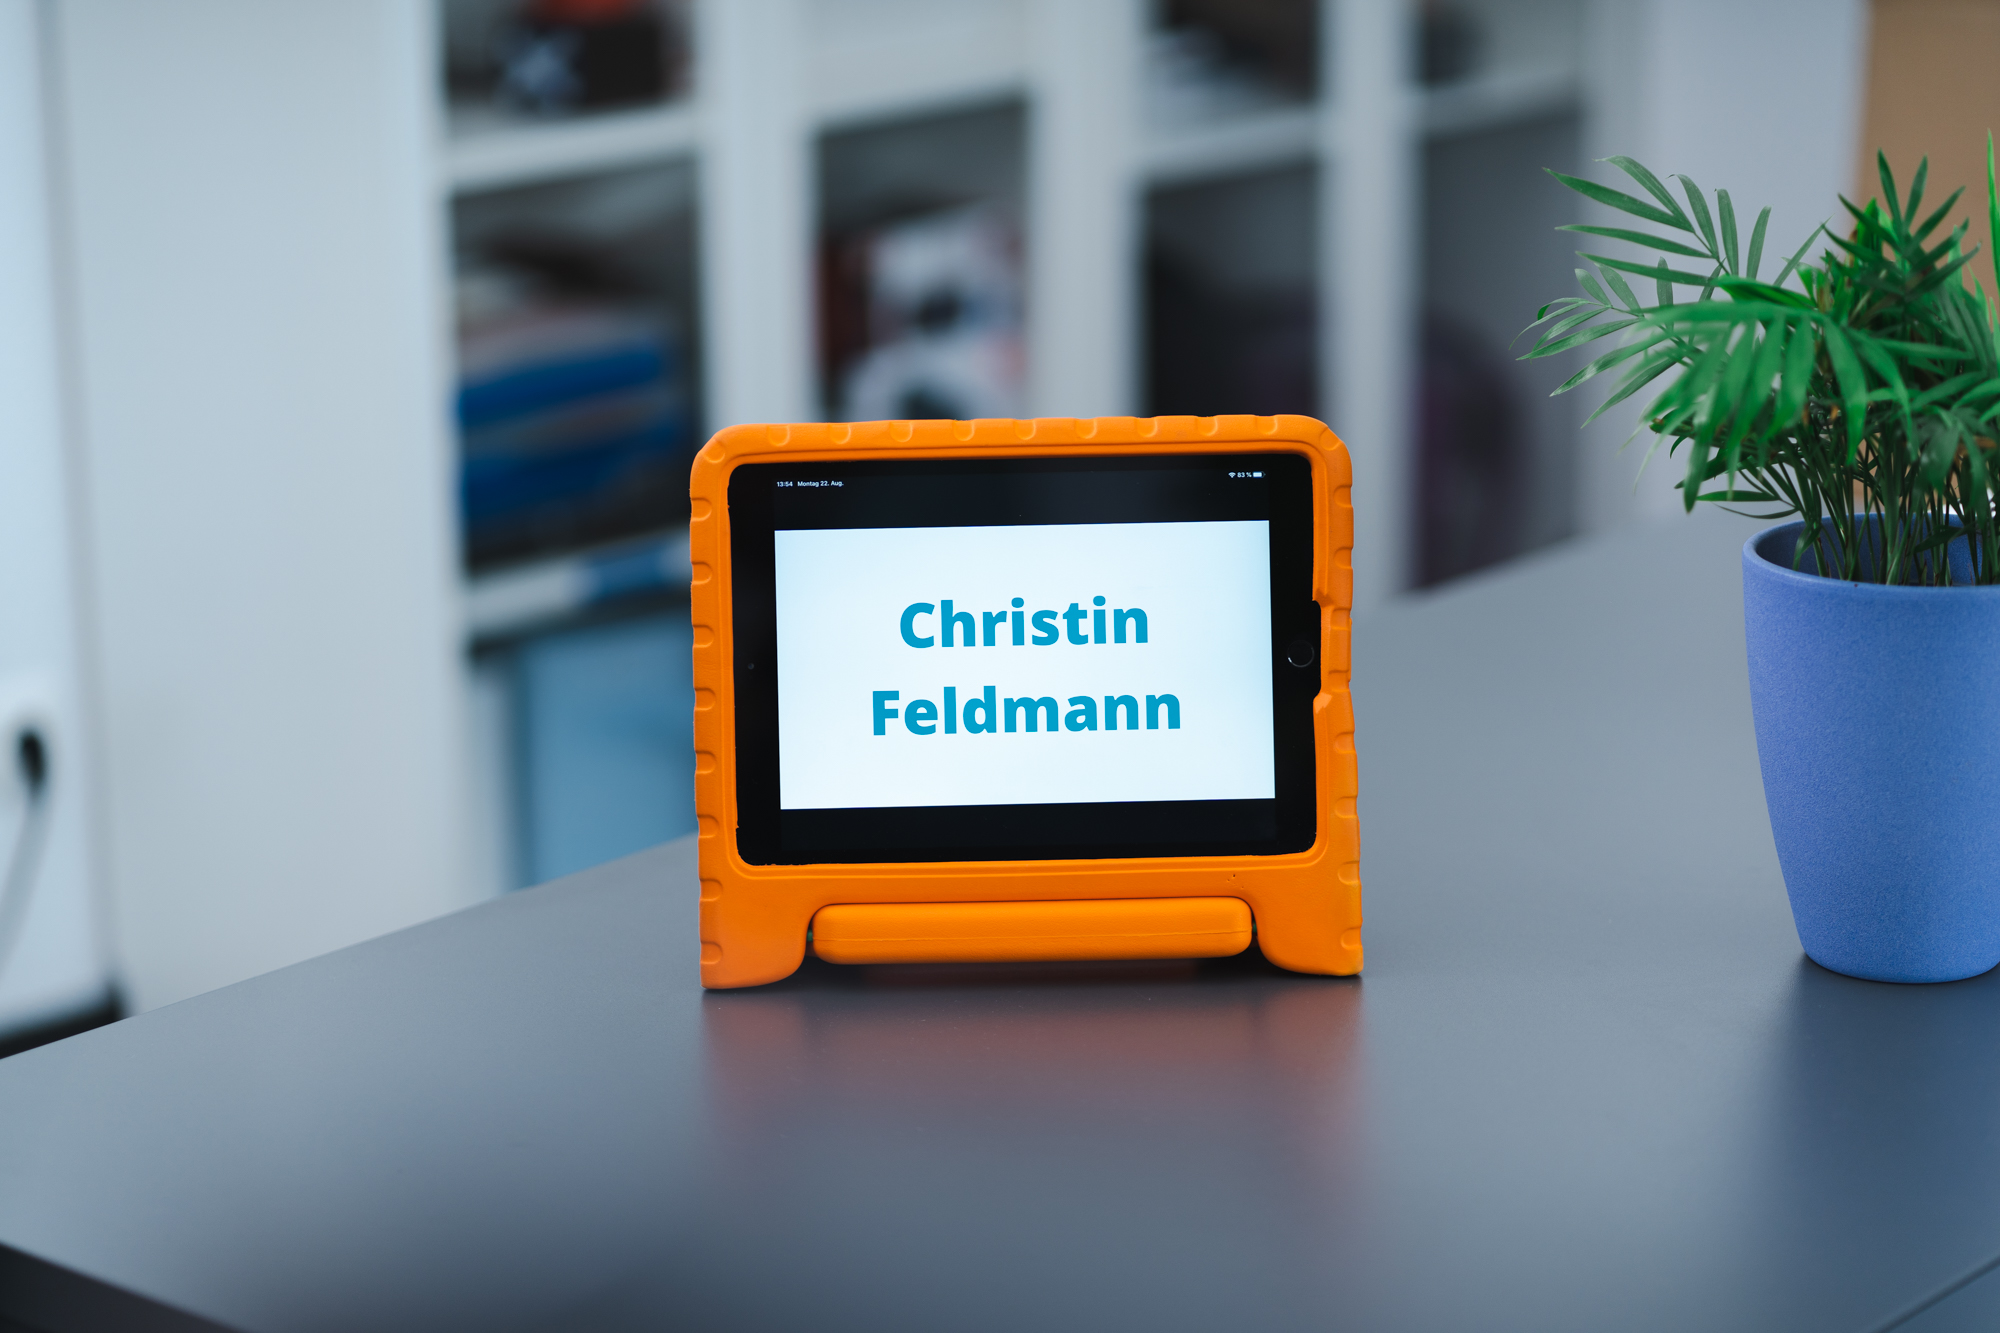 Zu sehen ist ein iPad auf einem Schreibtisch. Das iPad zeigt den Namen Christin Feldmann.